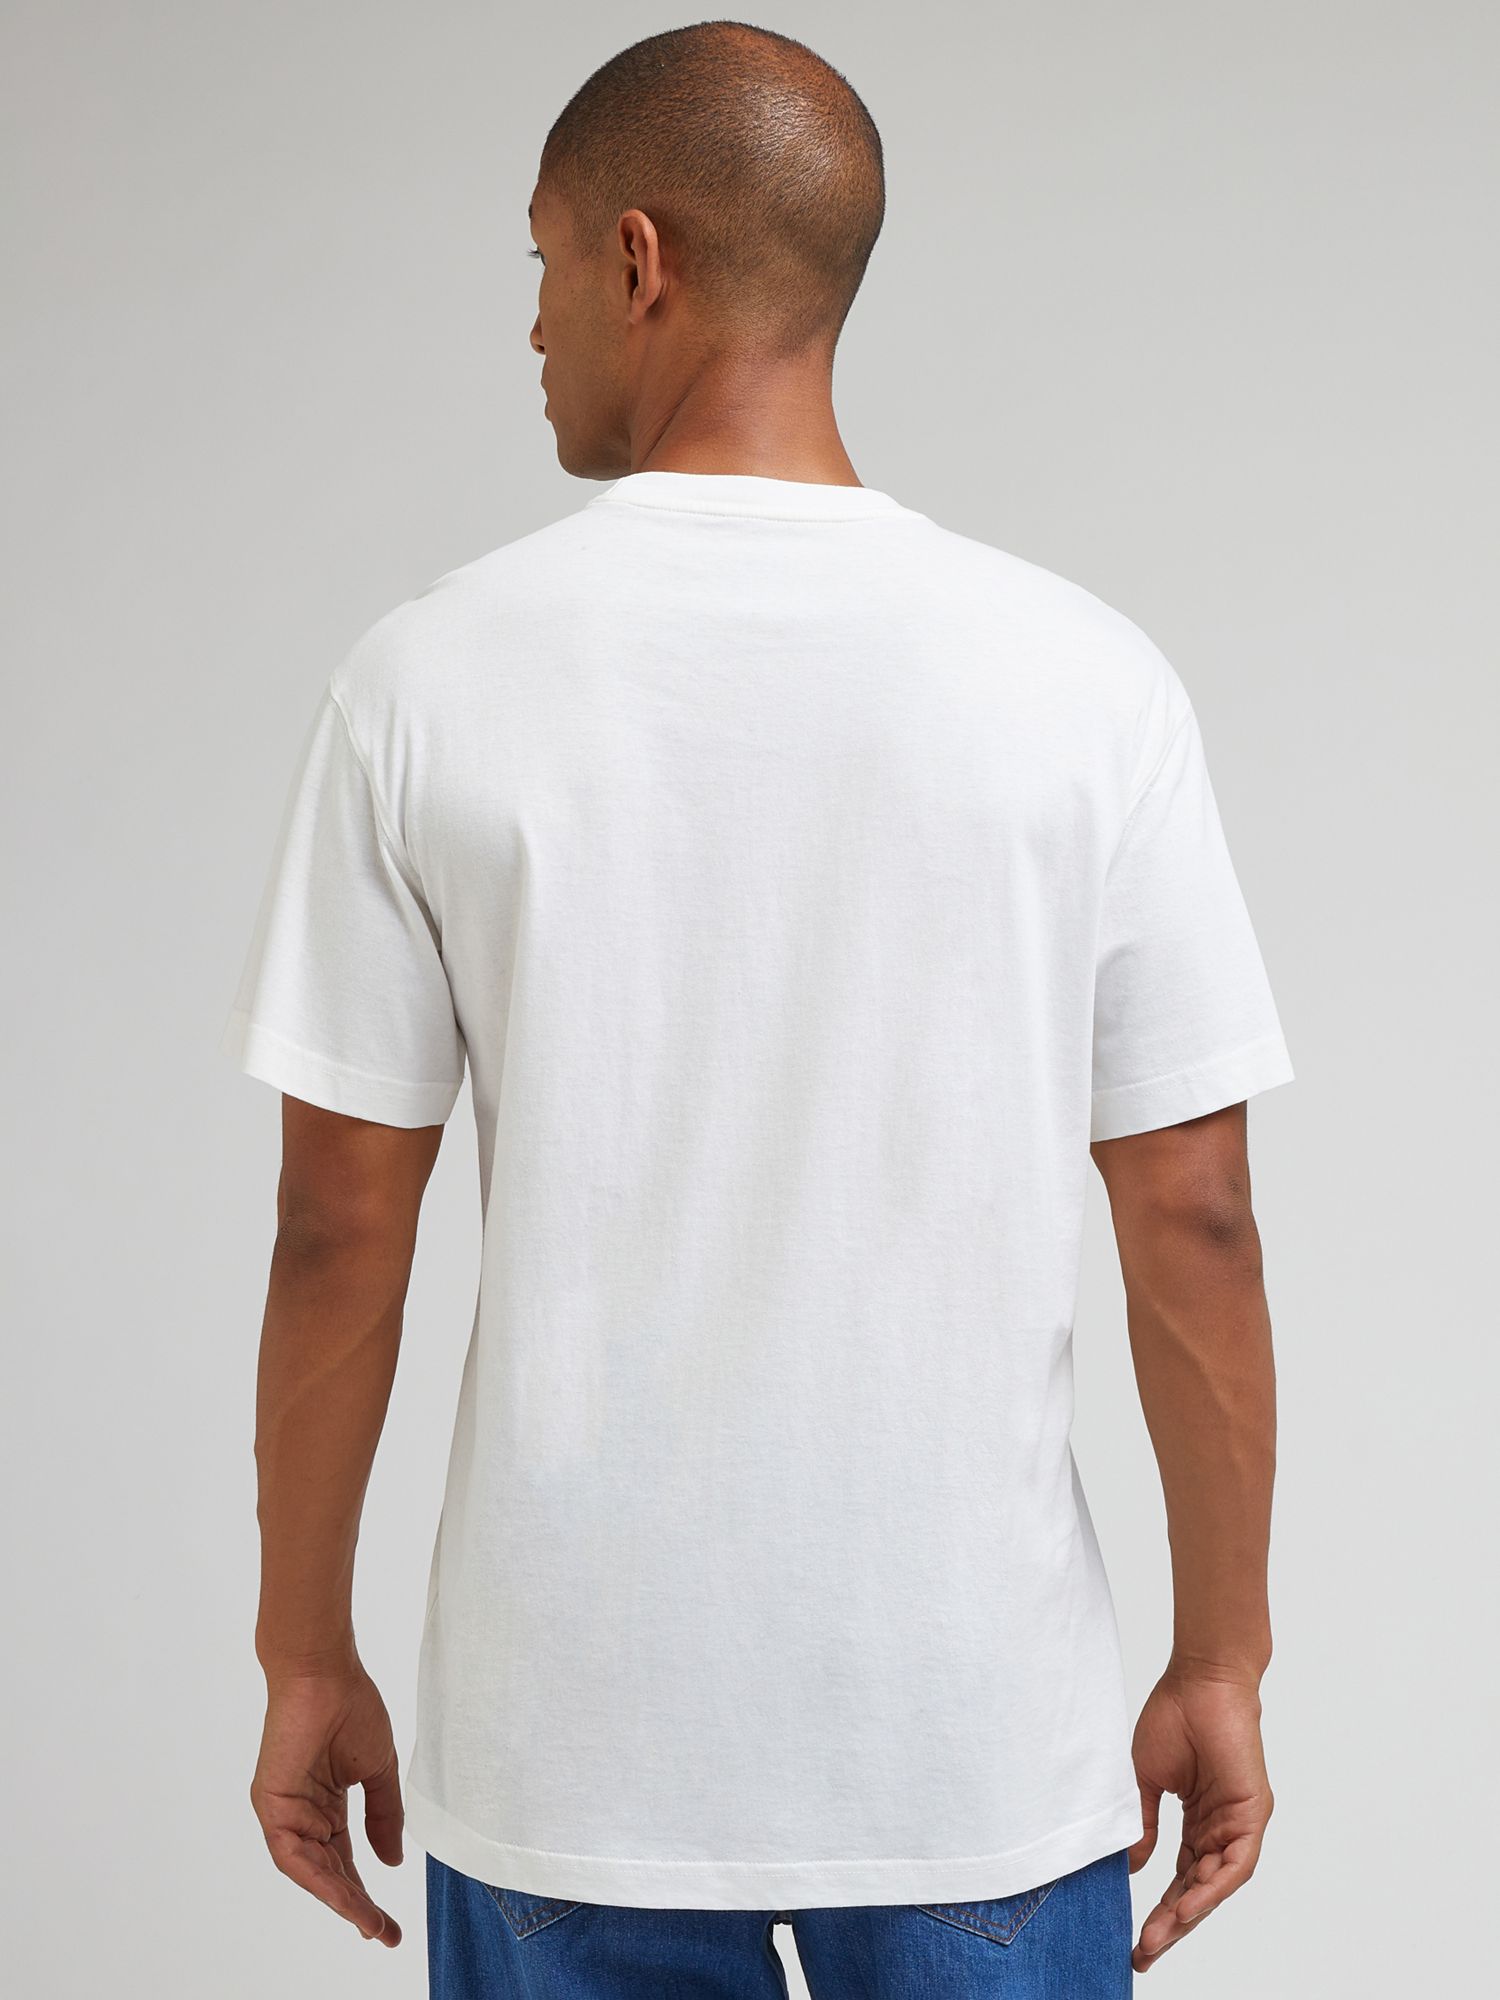 Lee Logo Short Sleeve T-Shirt, Ecru, XXL